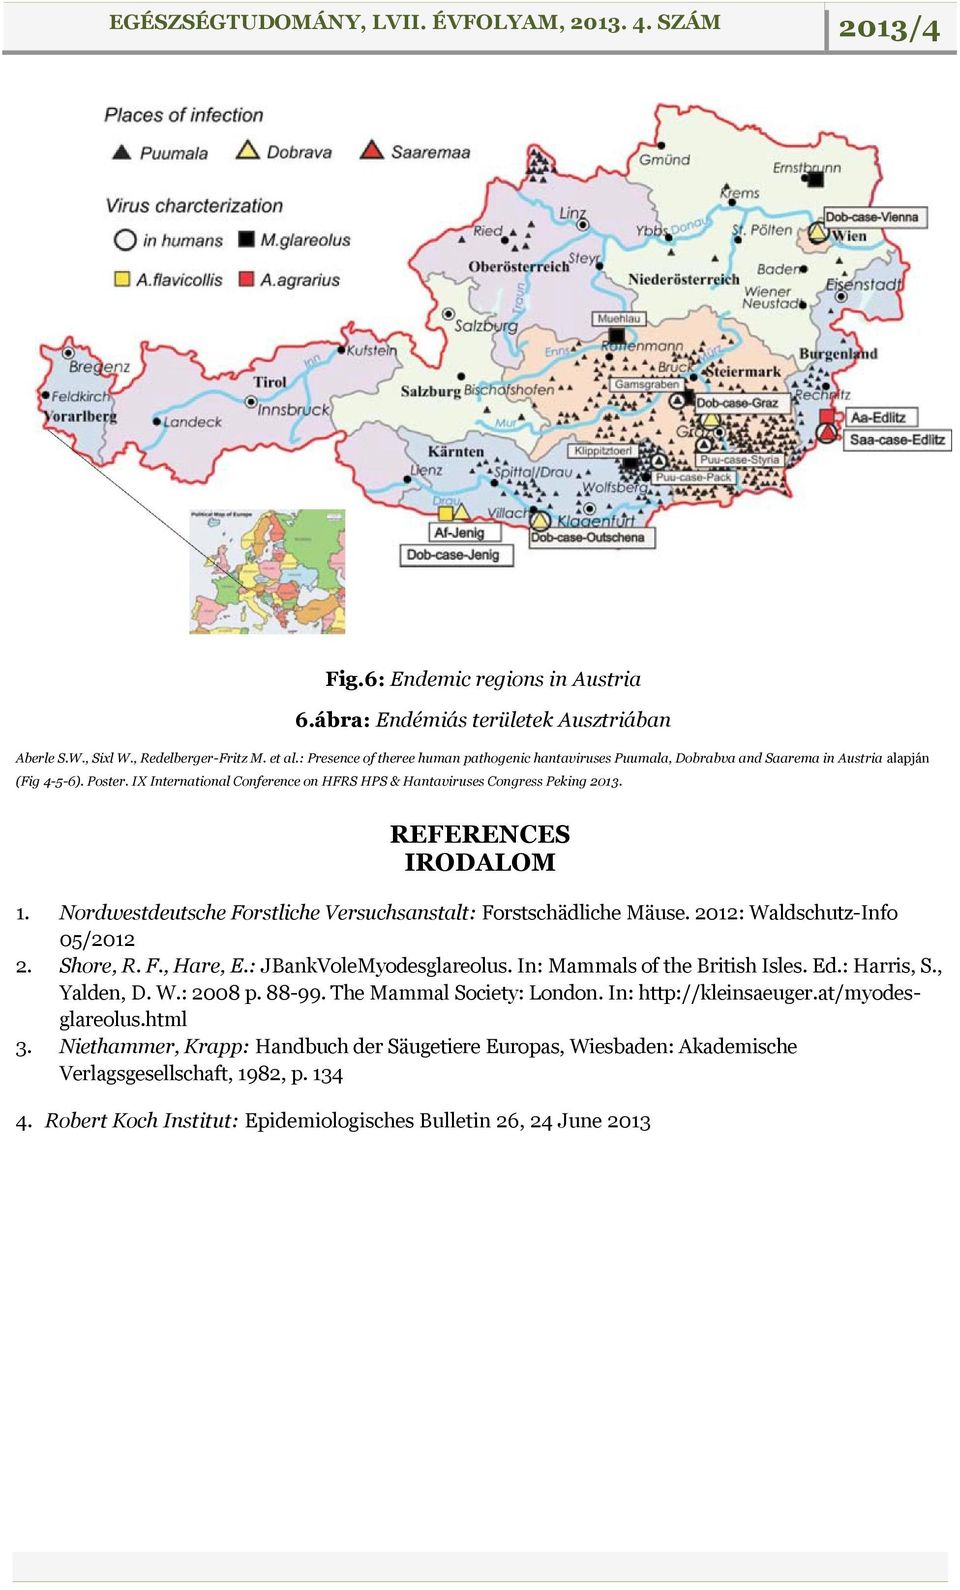 REFERENCES IRODALOM 1. Nordwestdeutsche Forstliche Versuchsanstalt: Forstschädliche Mäuse. 2012: Waldschutz-Info 05/2012 2. Shore, R. F., Hare, E.: JBankVoleMyodesglareolus.